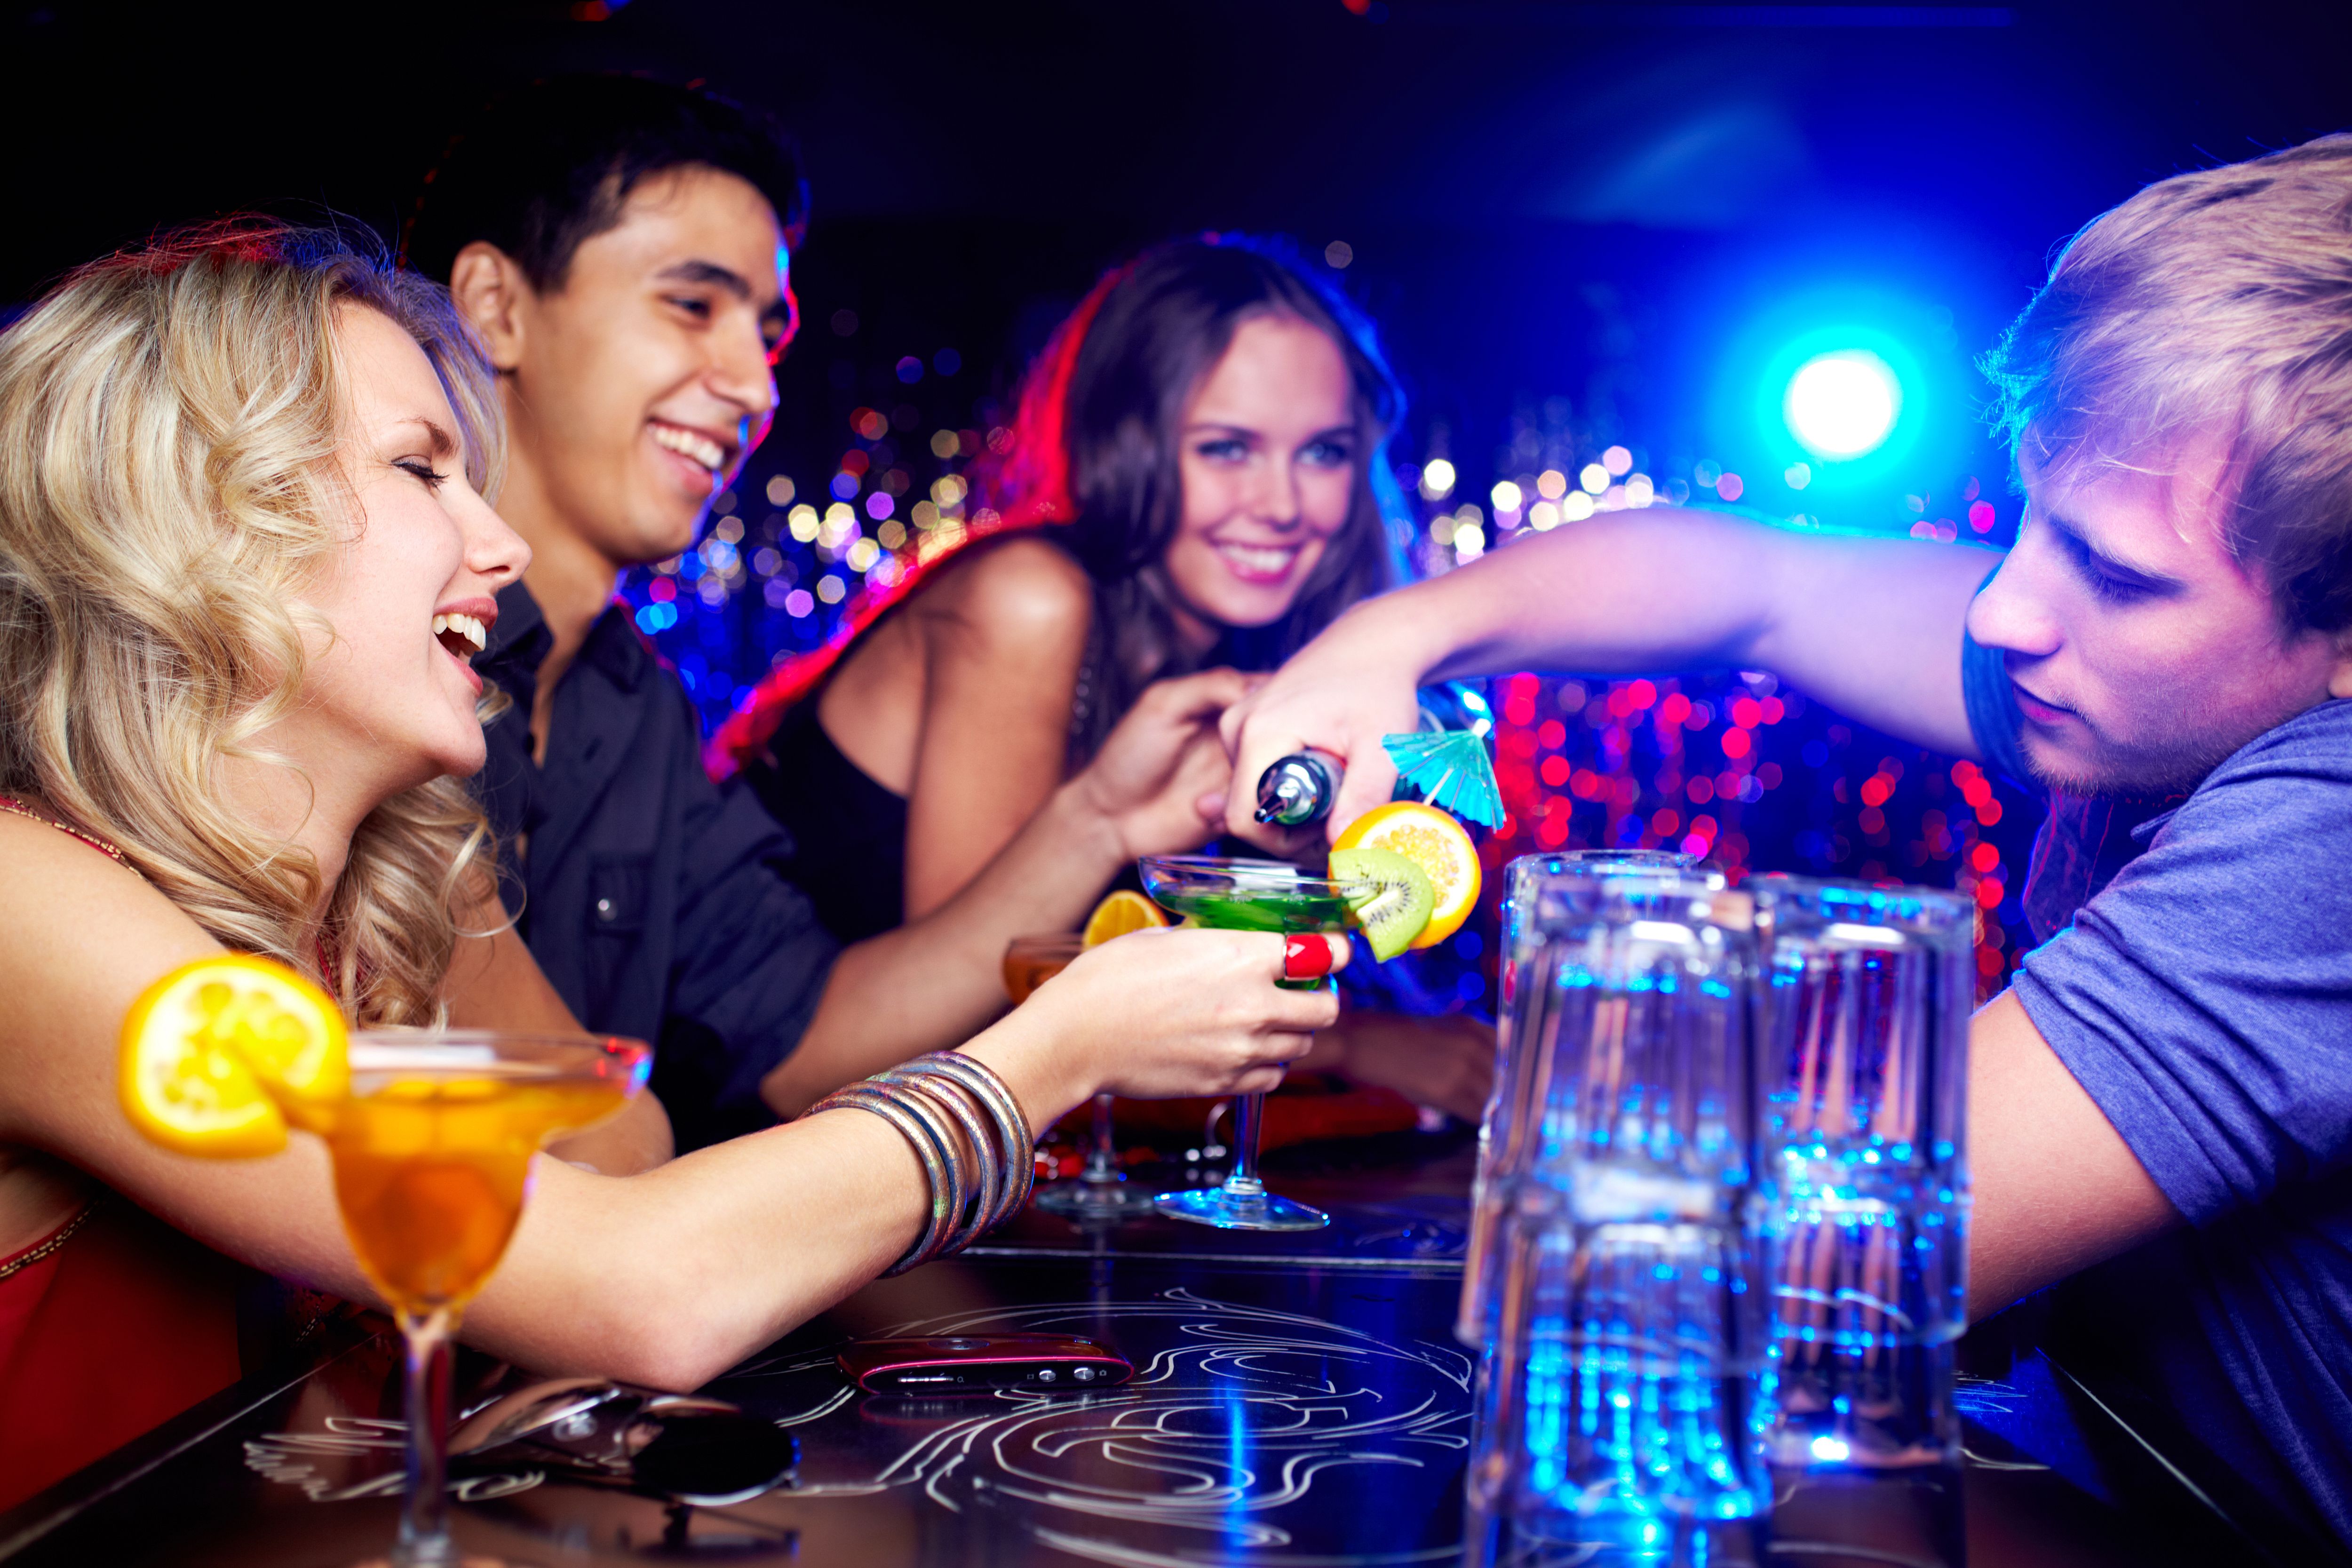 Увеселительные мероприятия это. Вечеринка. Тусовка в баре. В ночном клубе. Ночной бар с людьми.